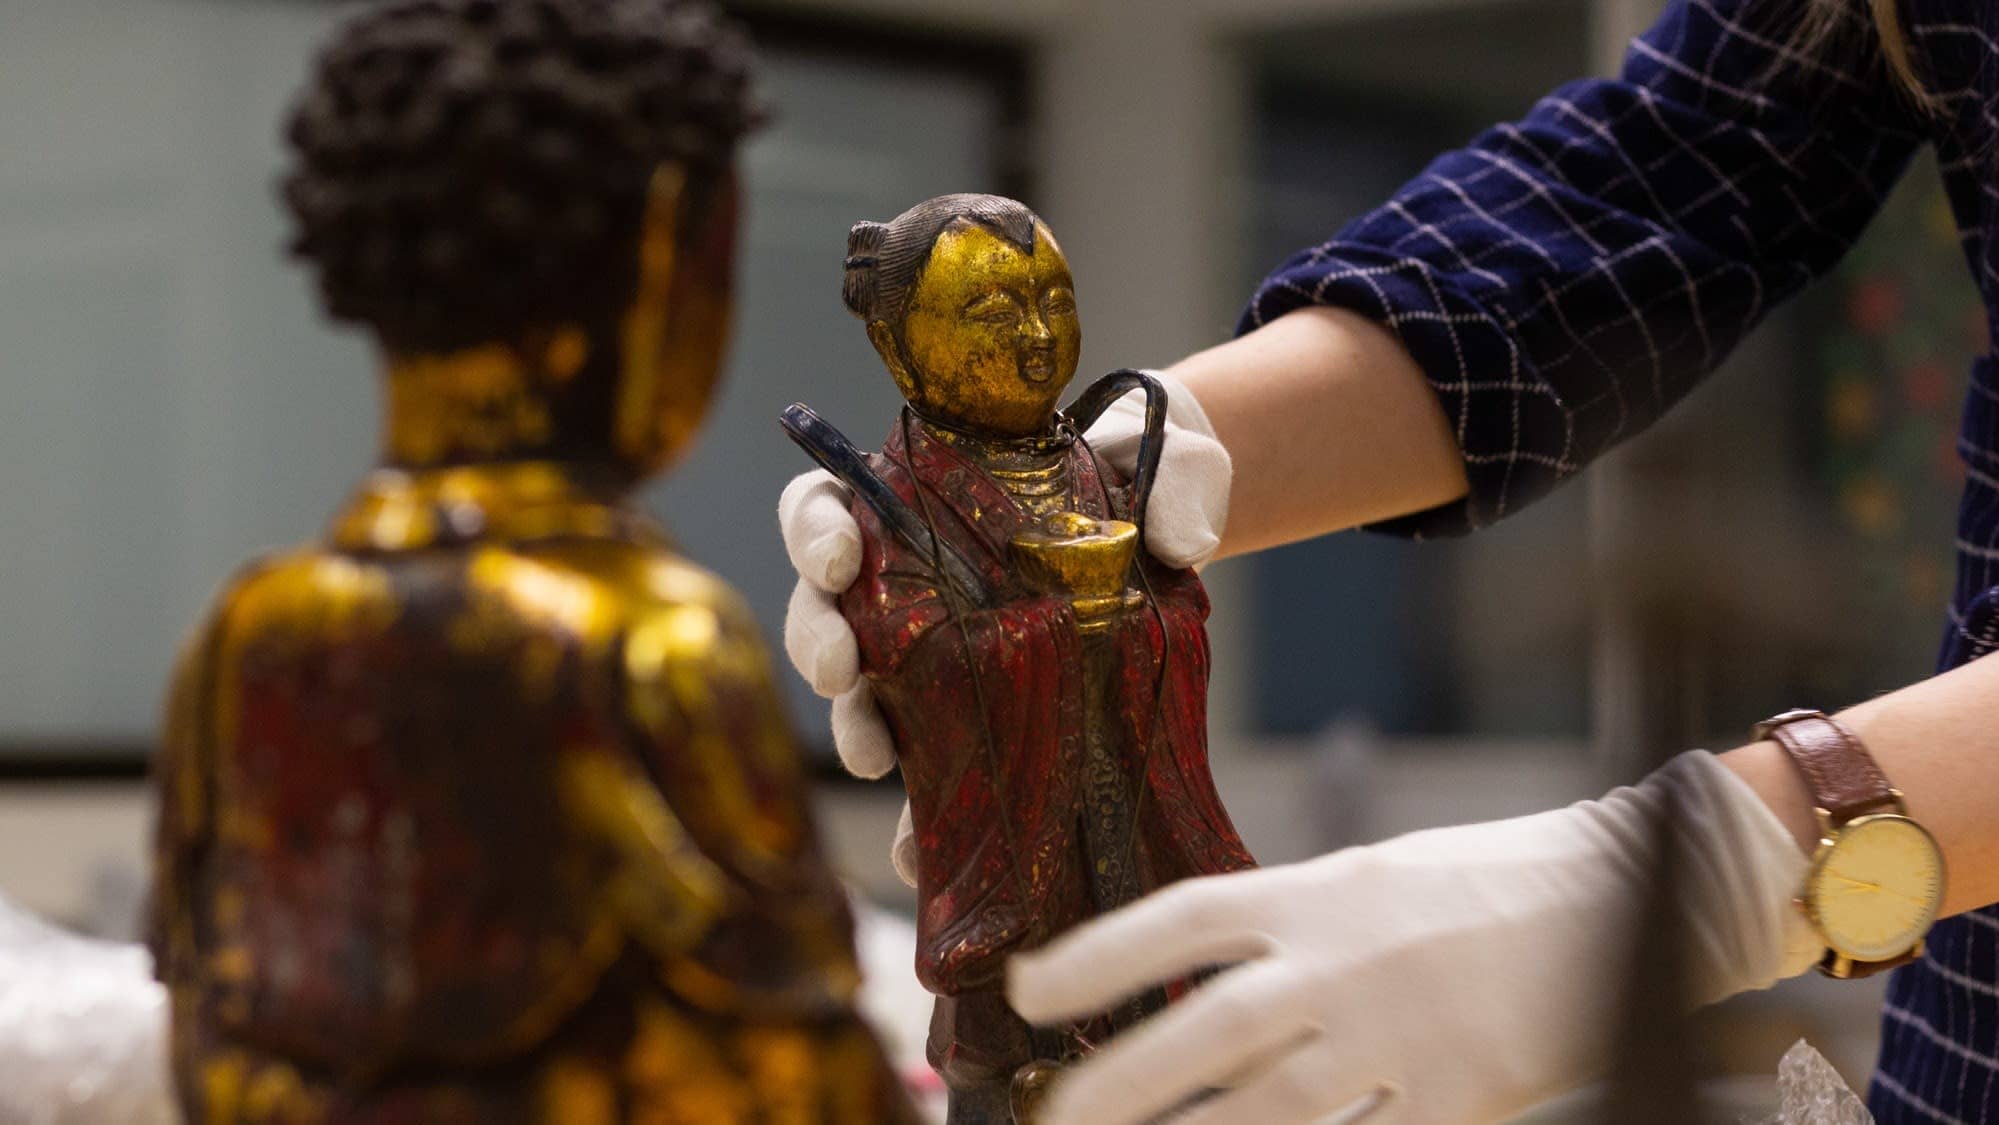 Aasialaisia taide-esineitä. Museon työntekijä nostaa yhtä pientä patsasta hansikkaat kädessä.